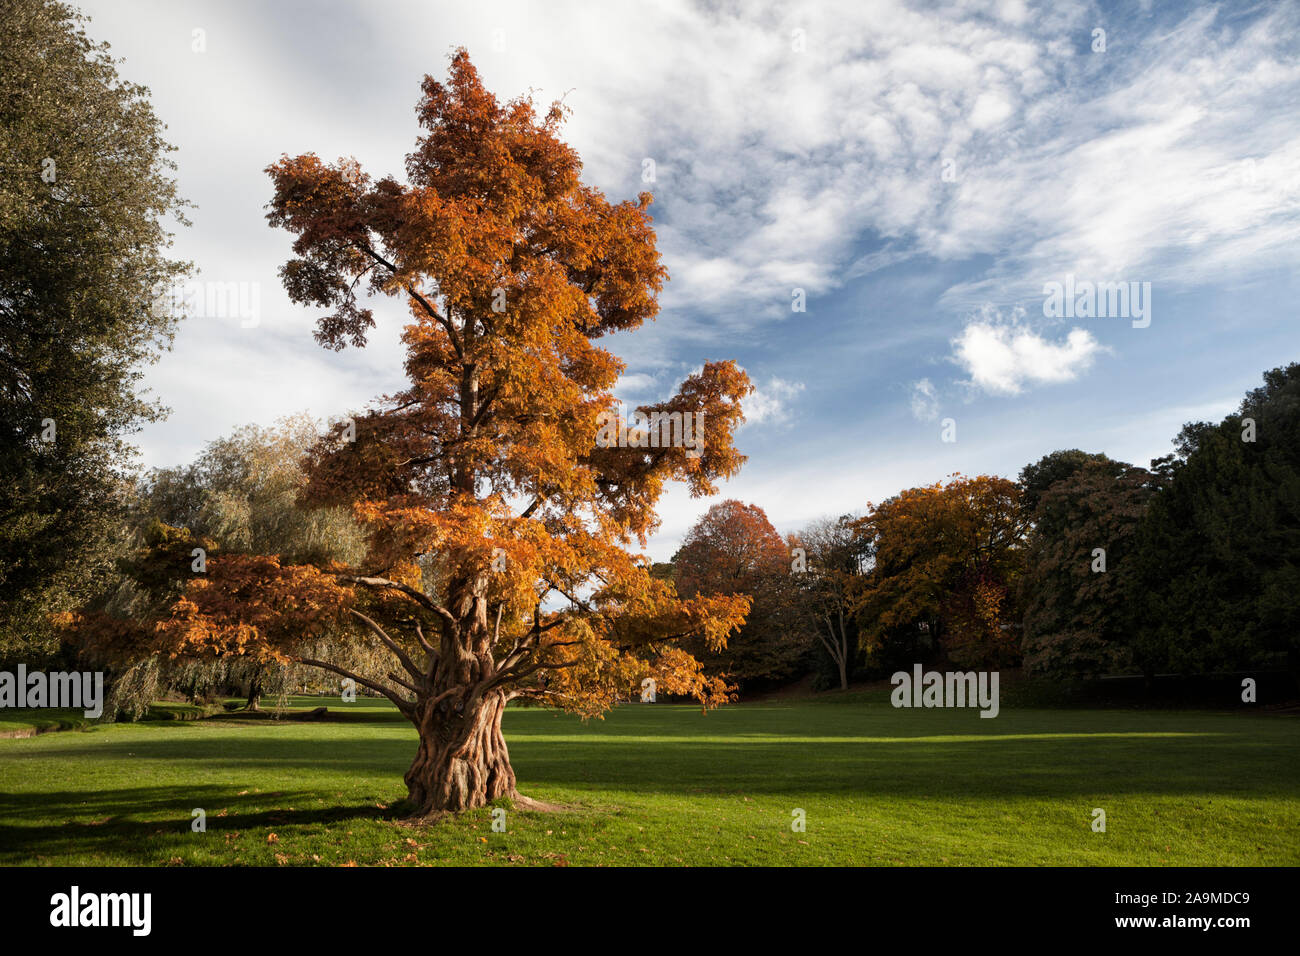 Distichum Taxodium distichum, Swamp Cypress Baum im Herbst Laub im englischen Parklandschaft wachsen, Alexandra Park, Hastings, East Sussex, England, Großbritannien Stockfoto